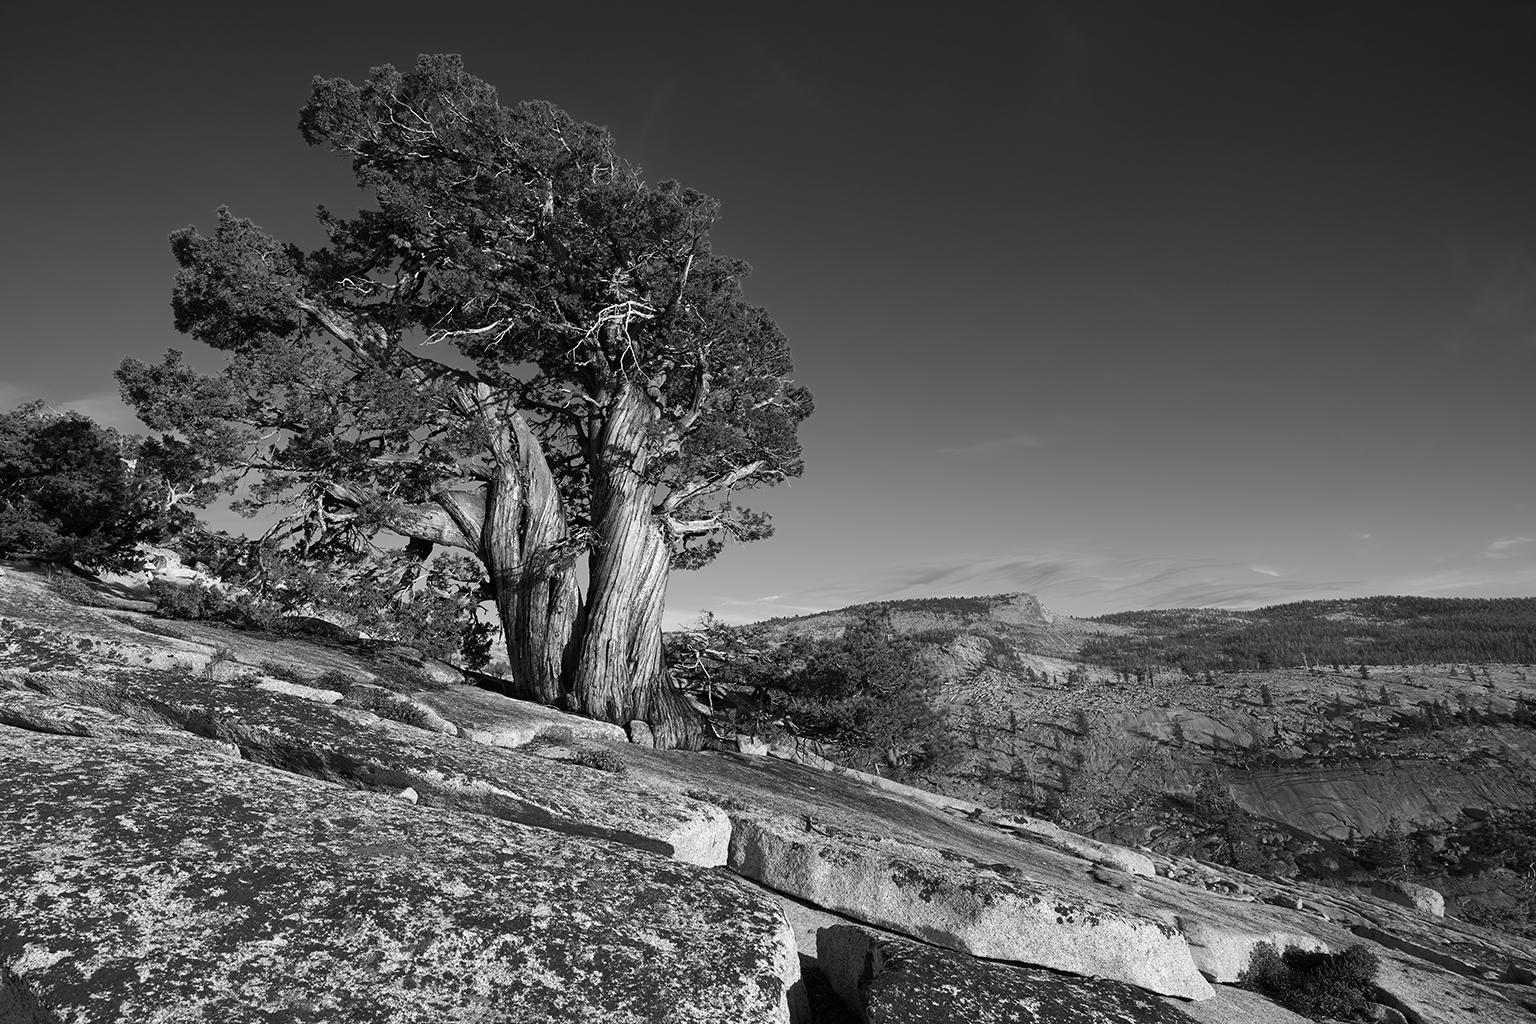 Frank Schott Black and White Photograph – Tree Study II – Großformatige b/w-Fotografie eines einsamen antiken Baumes in Landschaft